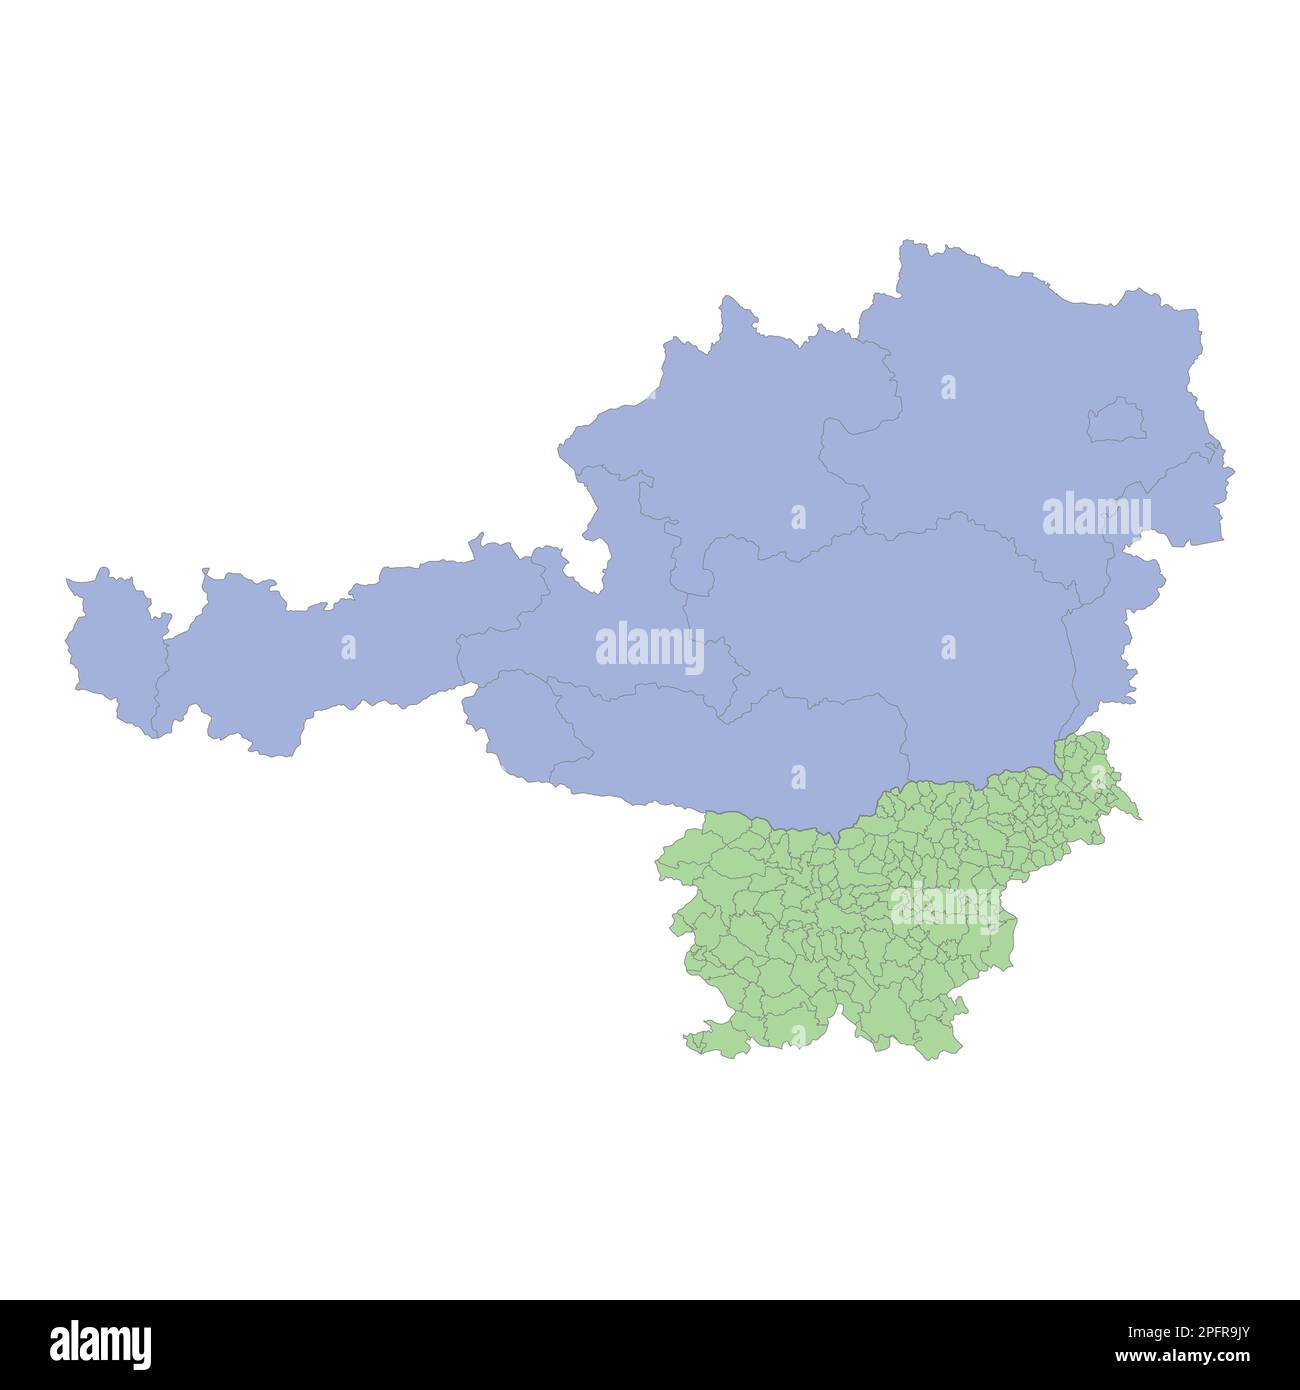 Carta politica di alta qualità dell'Austria e della Slovenia con i confini delle regioni o delle province. Illustrazione vettoriale Illustrazione Vettoriale